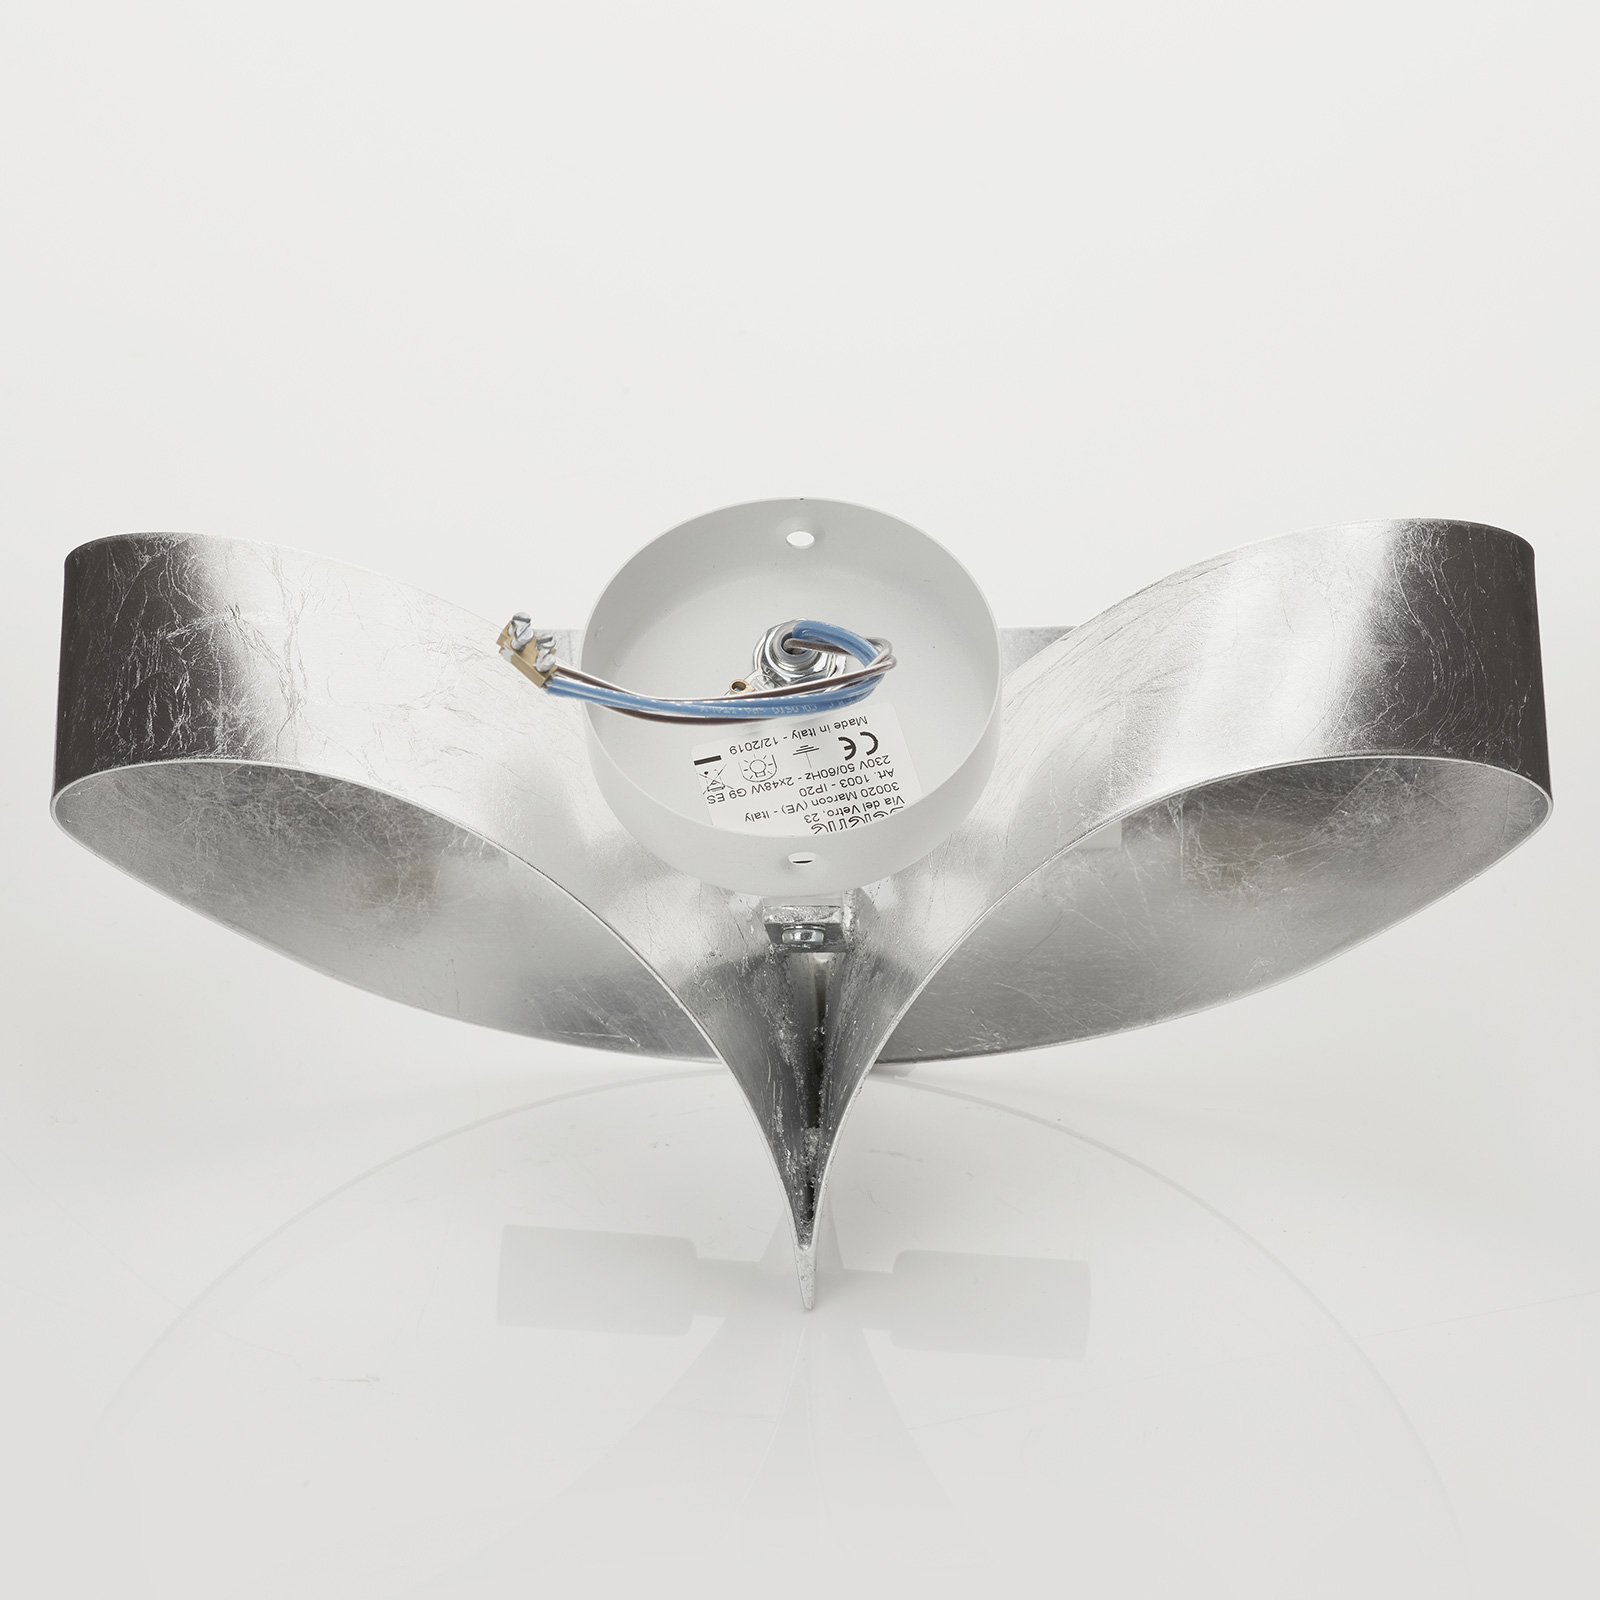 Strieborné dizajnové nástenné svietidlo Scudo